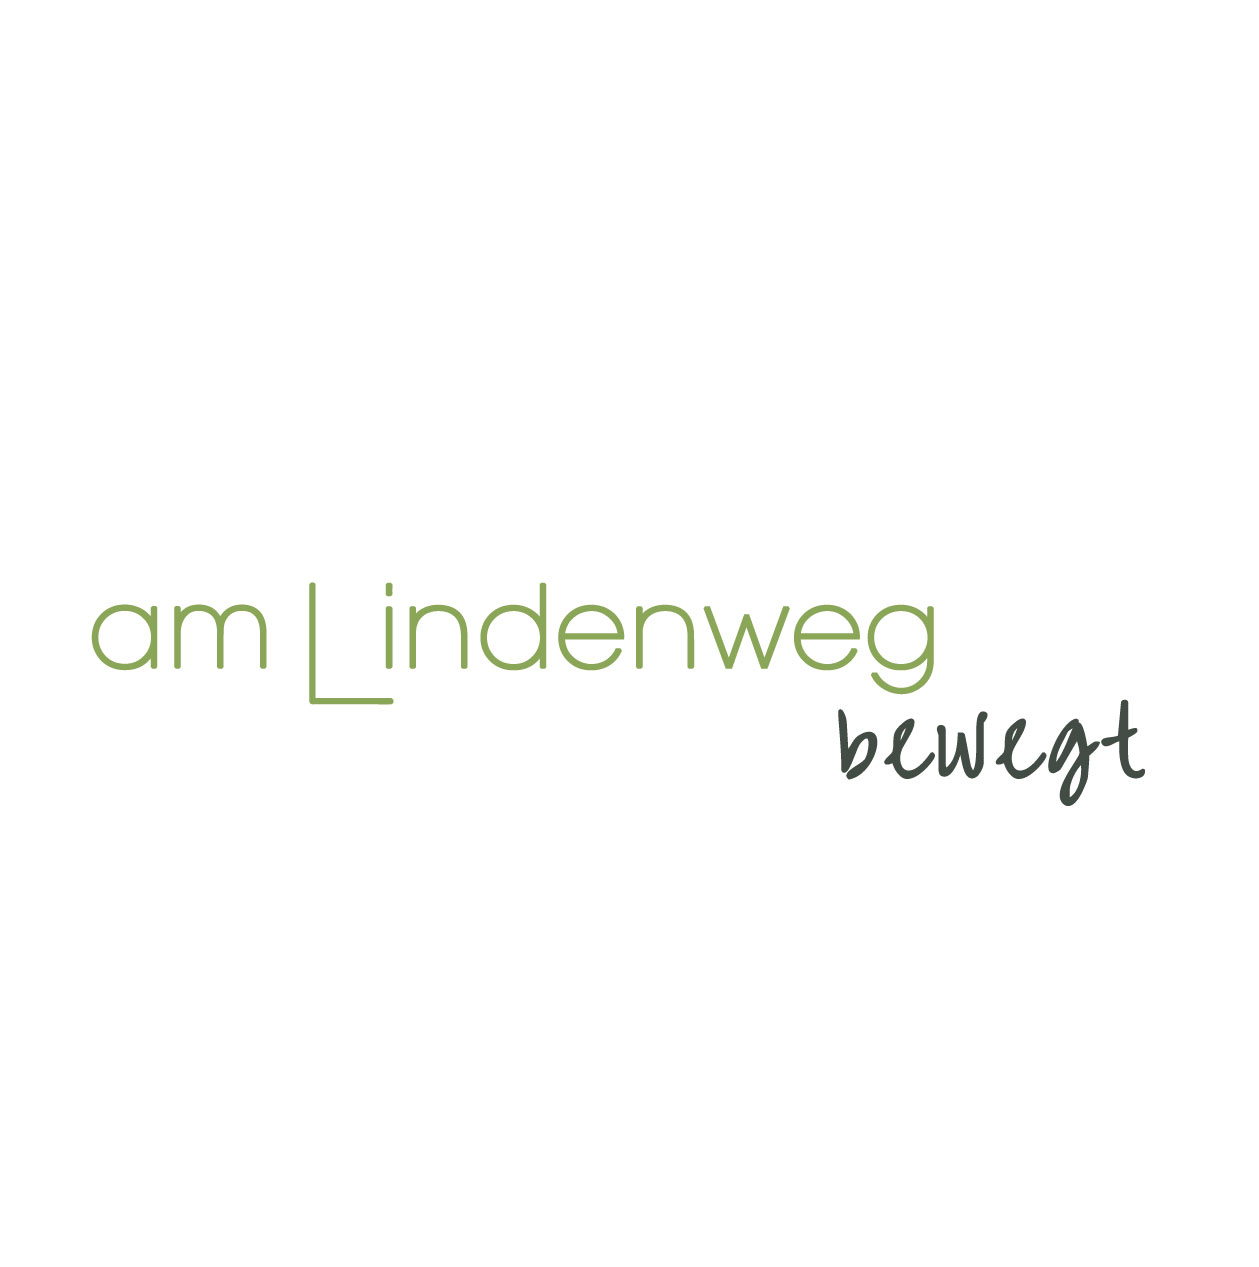 (c) Amlindenweg.ch